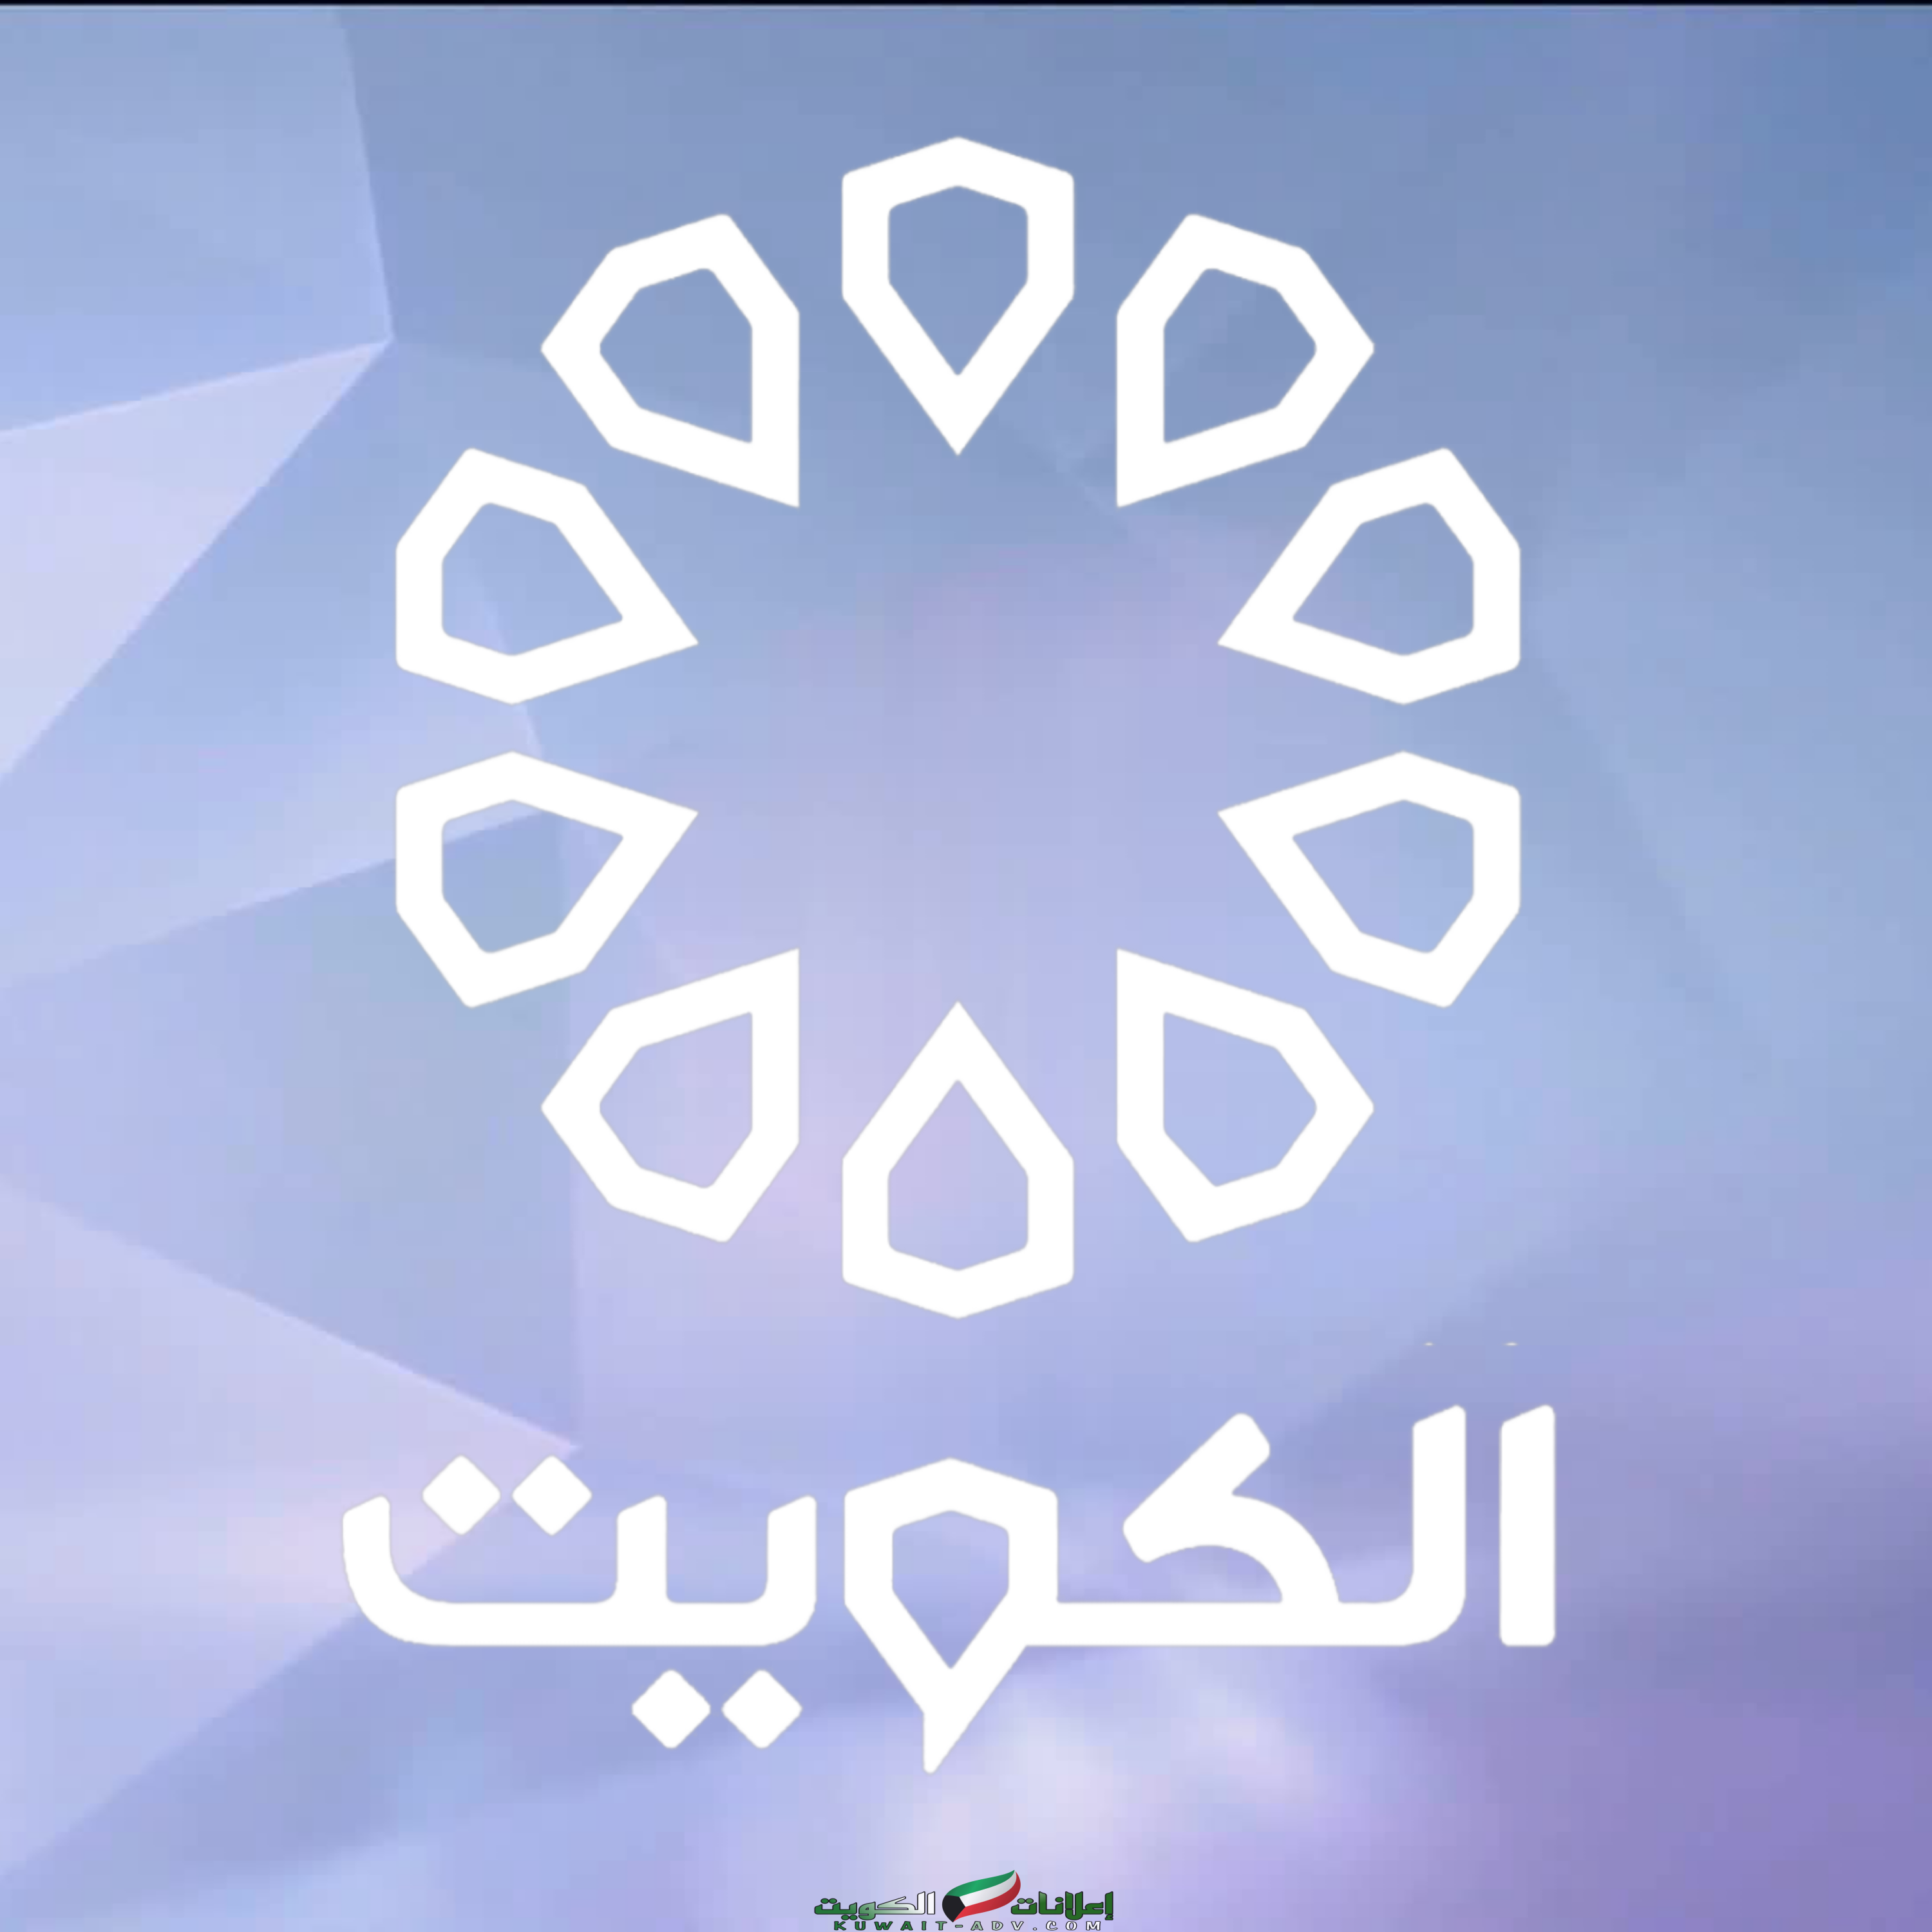 اسماء مذيعين تلفزيون الكويت